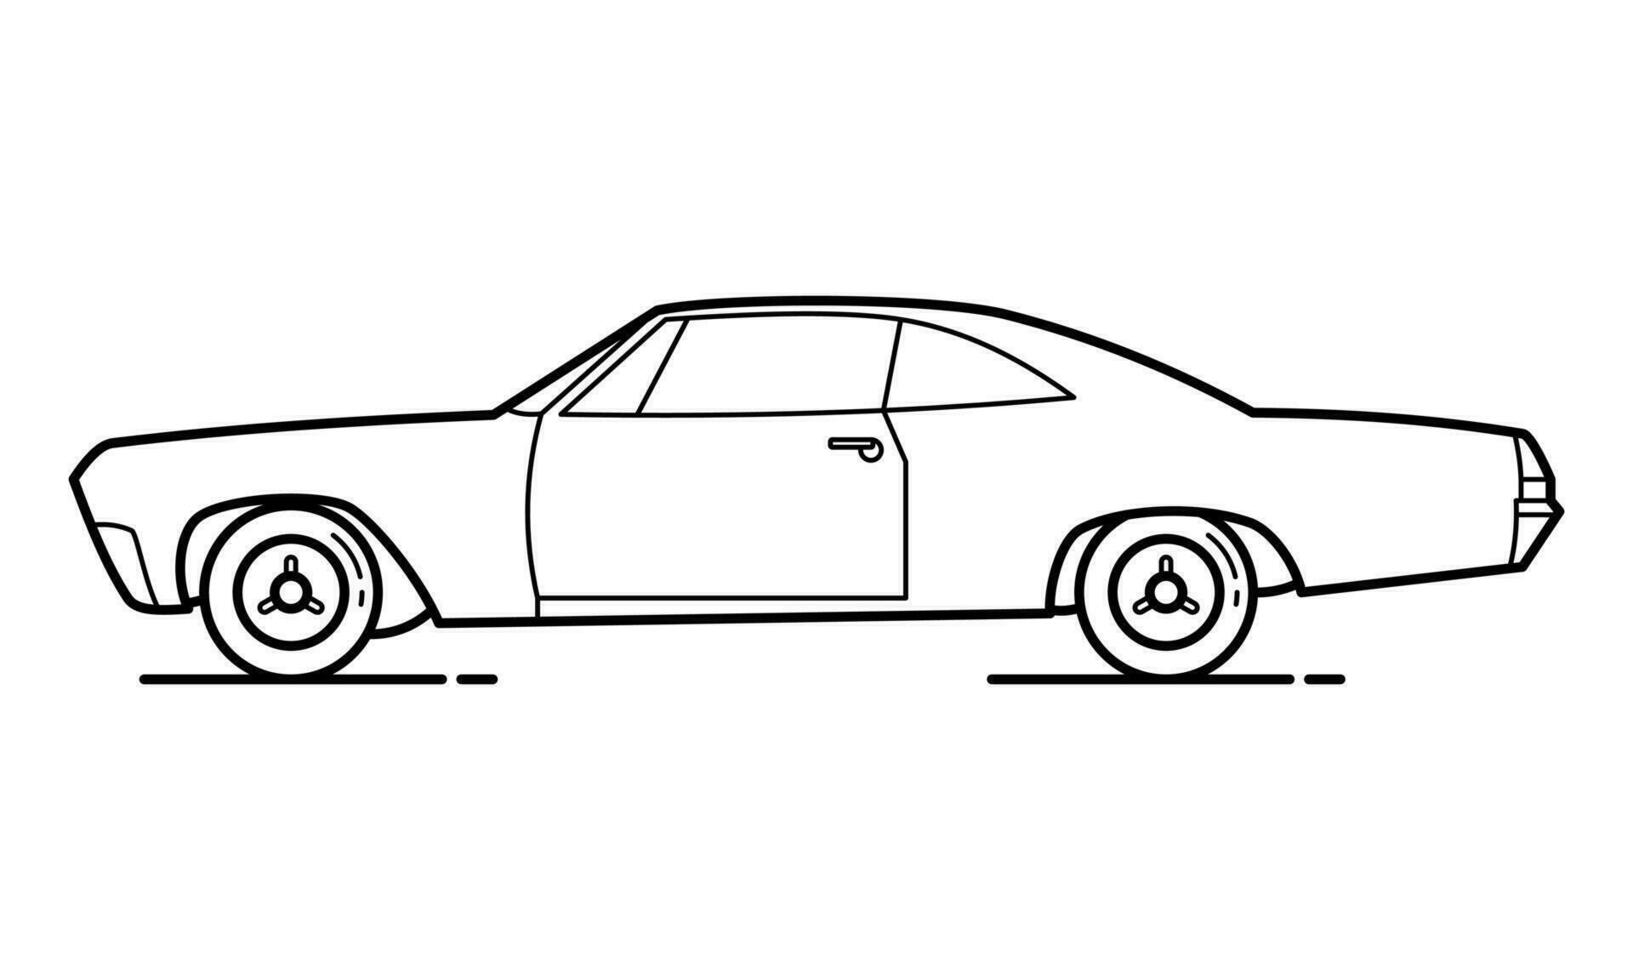 diario coche contorno diseño para dibujo libro vector